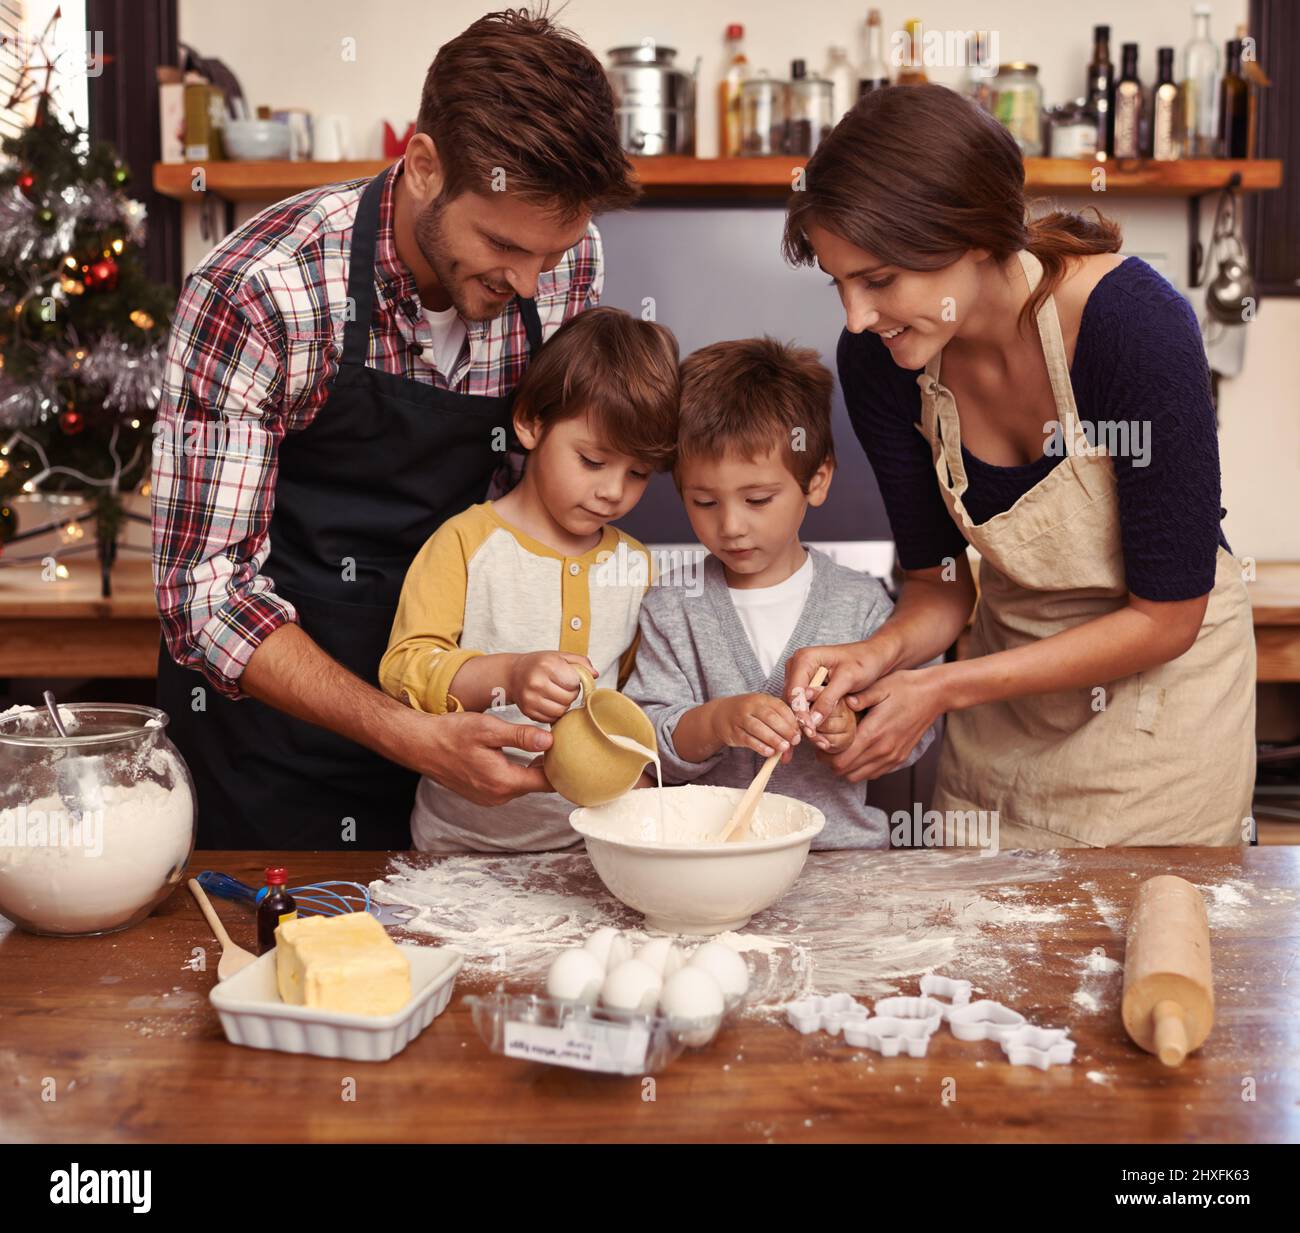 Süßes als Familie machen. Zwei niedliche kleine Jungen backen mit ihren Eltern in der Küche. Stockfoto